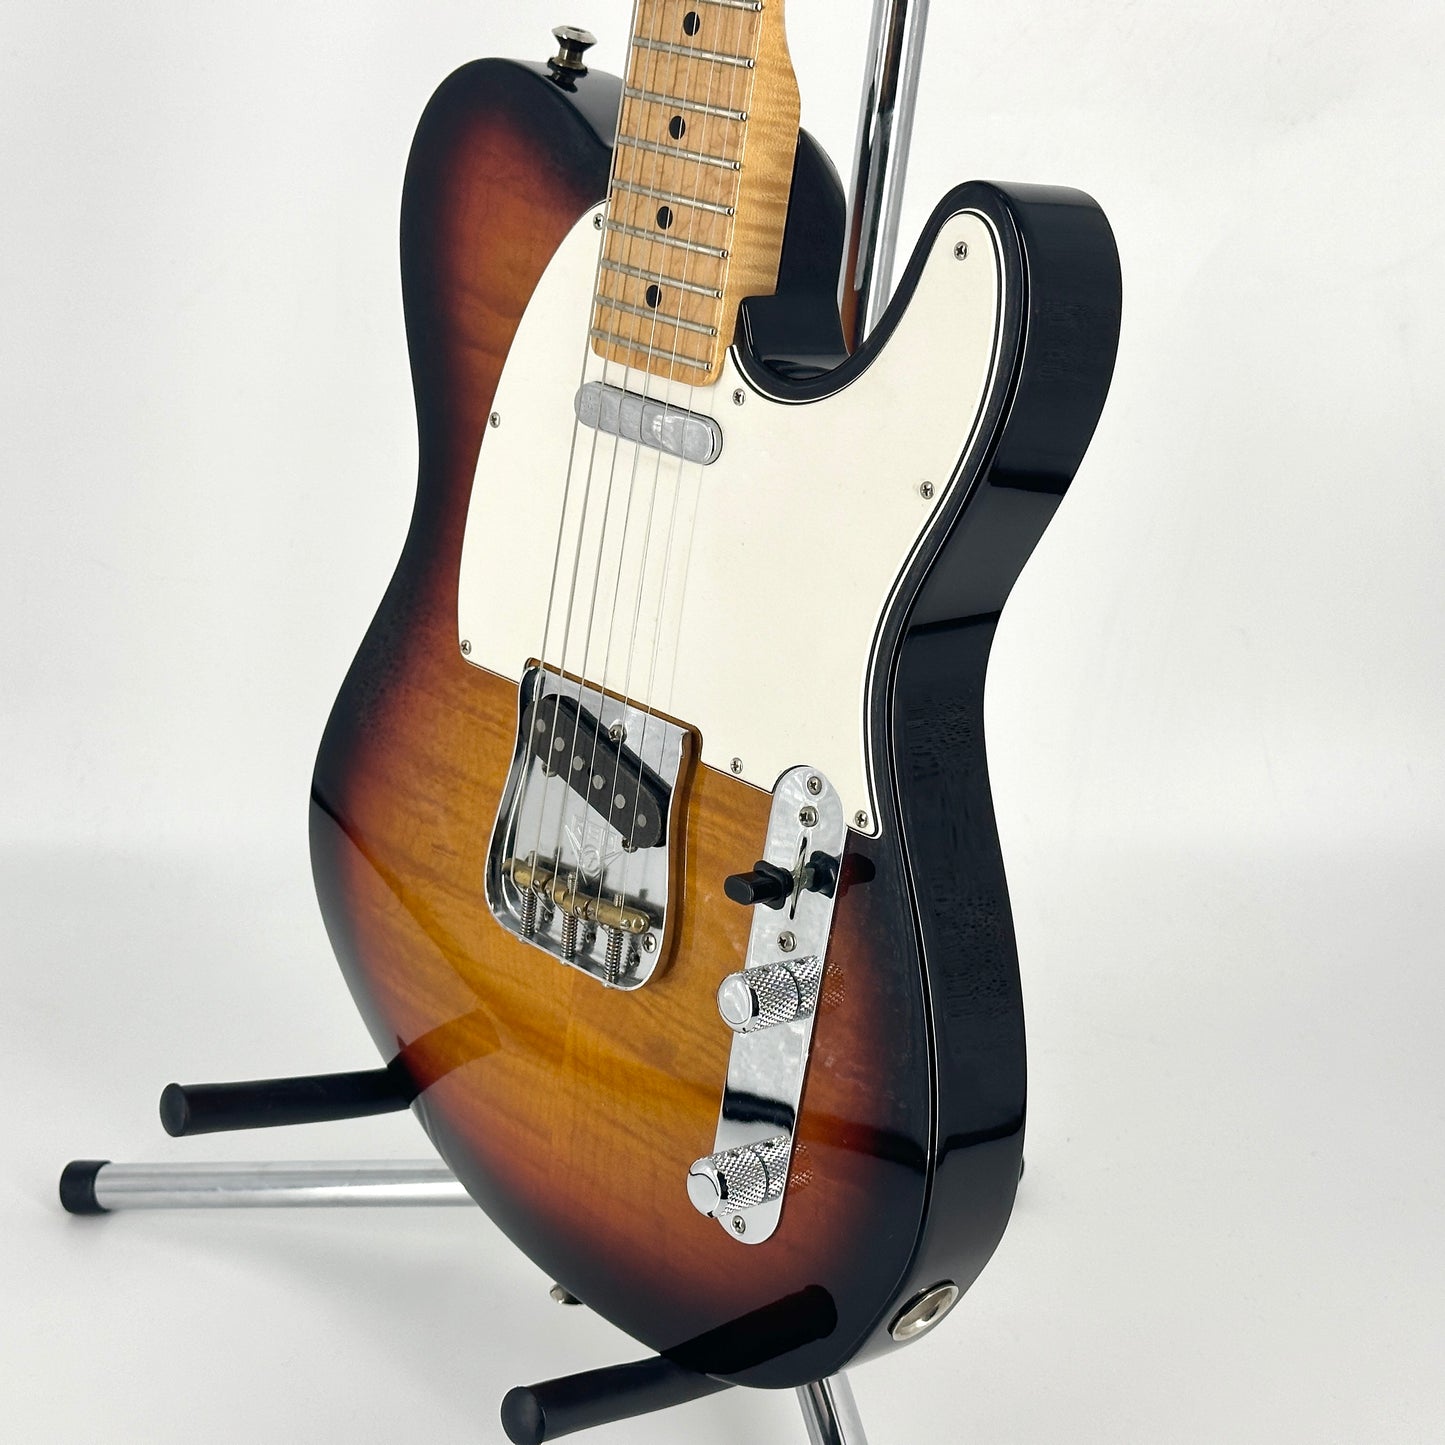 2013 Fender Custom Shop Deluxe Telecaster - 3 Tone Sunburst